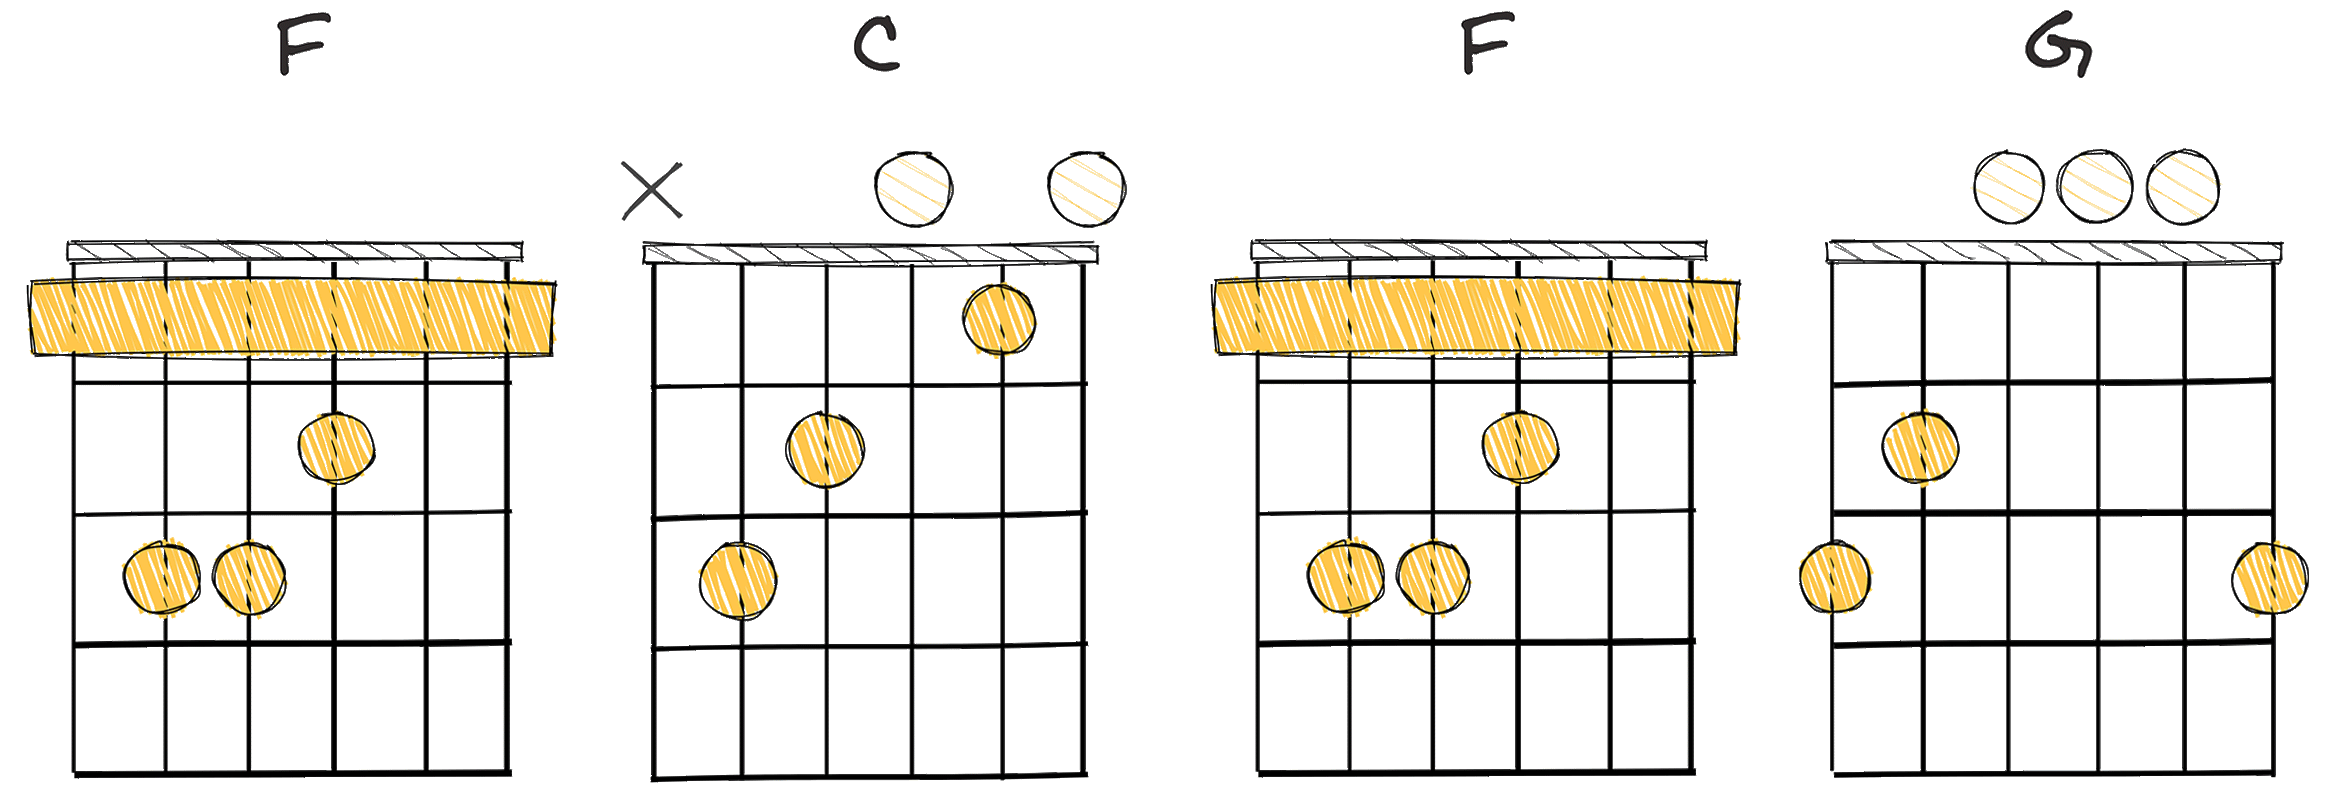 IV - I - IV - V (4-1-4-5) chords diagram